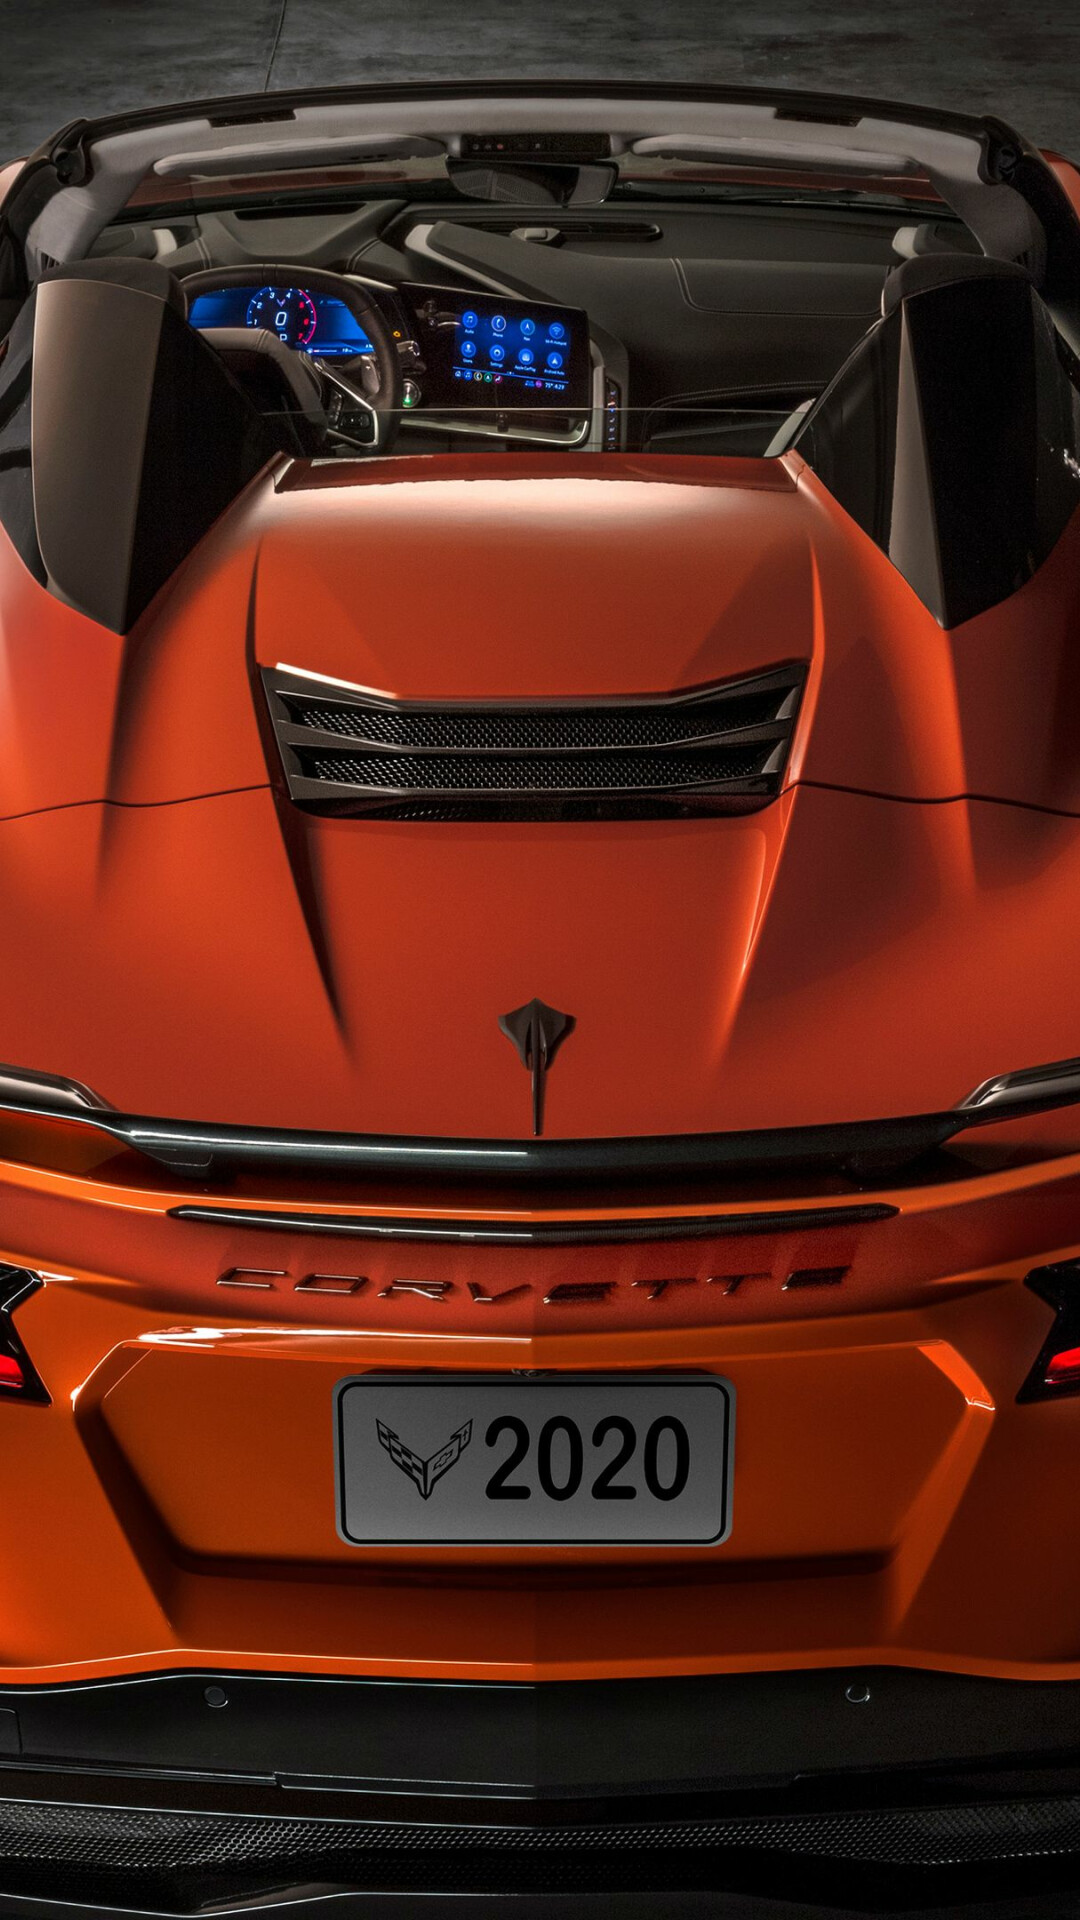 Chevrolet: Corvette 2020, Vehicle registration plate. 1080x1920 Full HD Background.